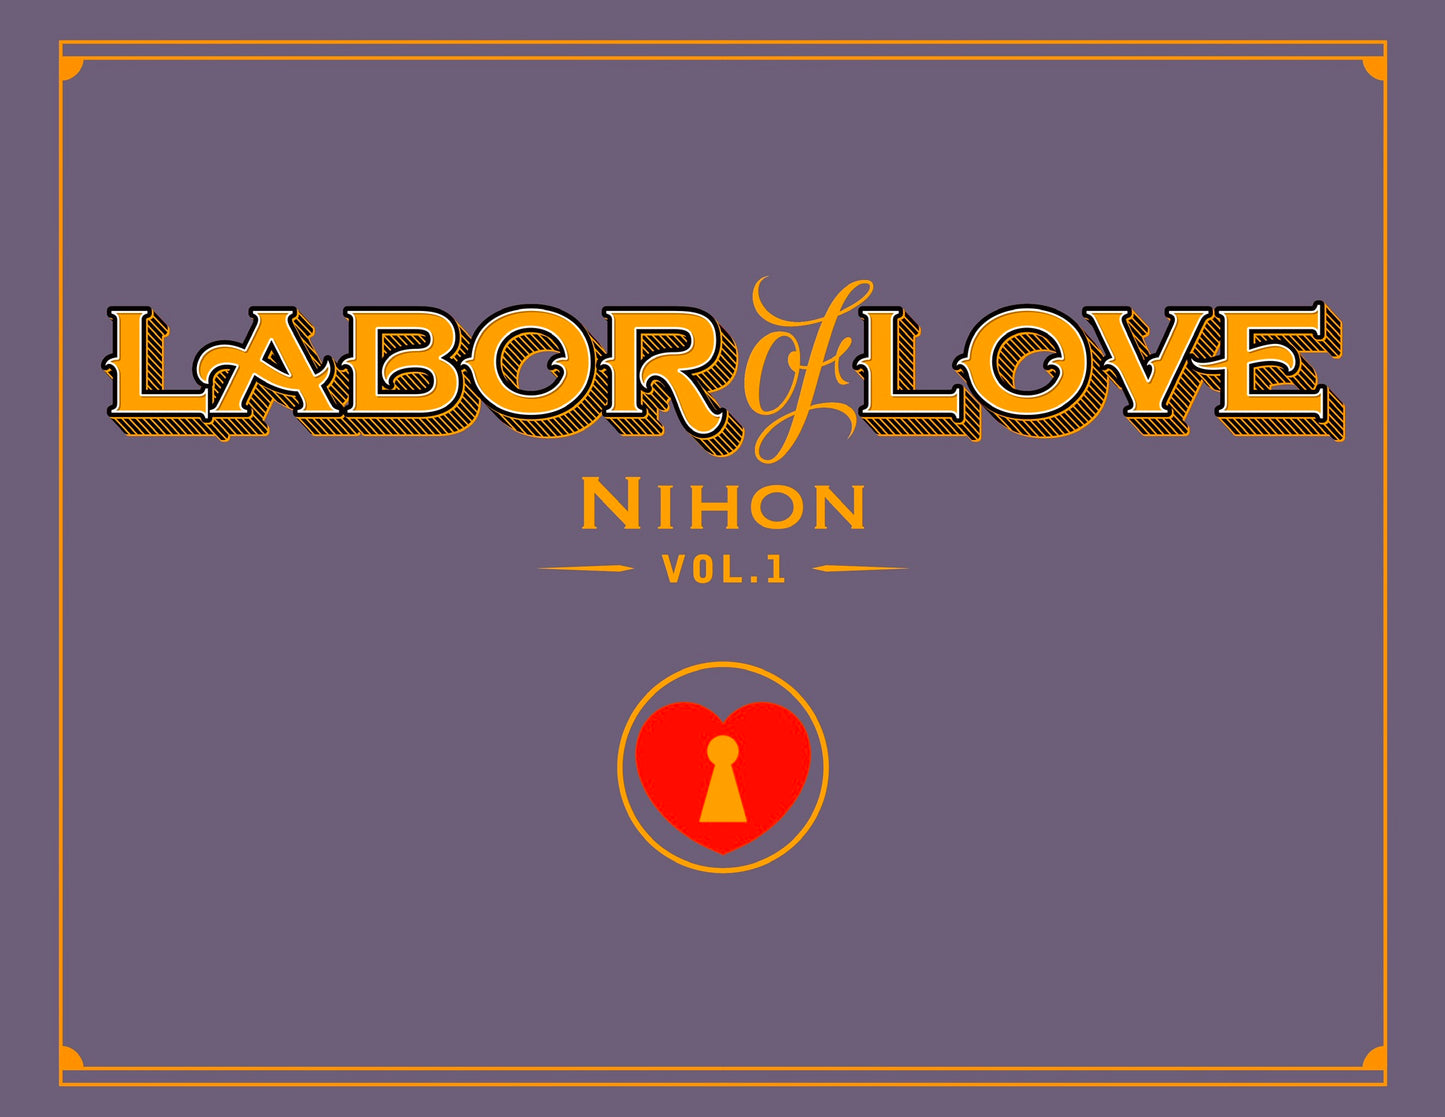 Labor of Love Nihon Vol.1 Pre-Order (Physical Copy)